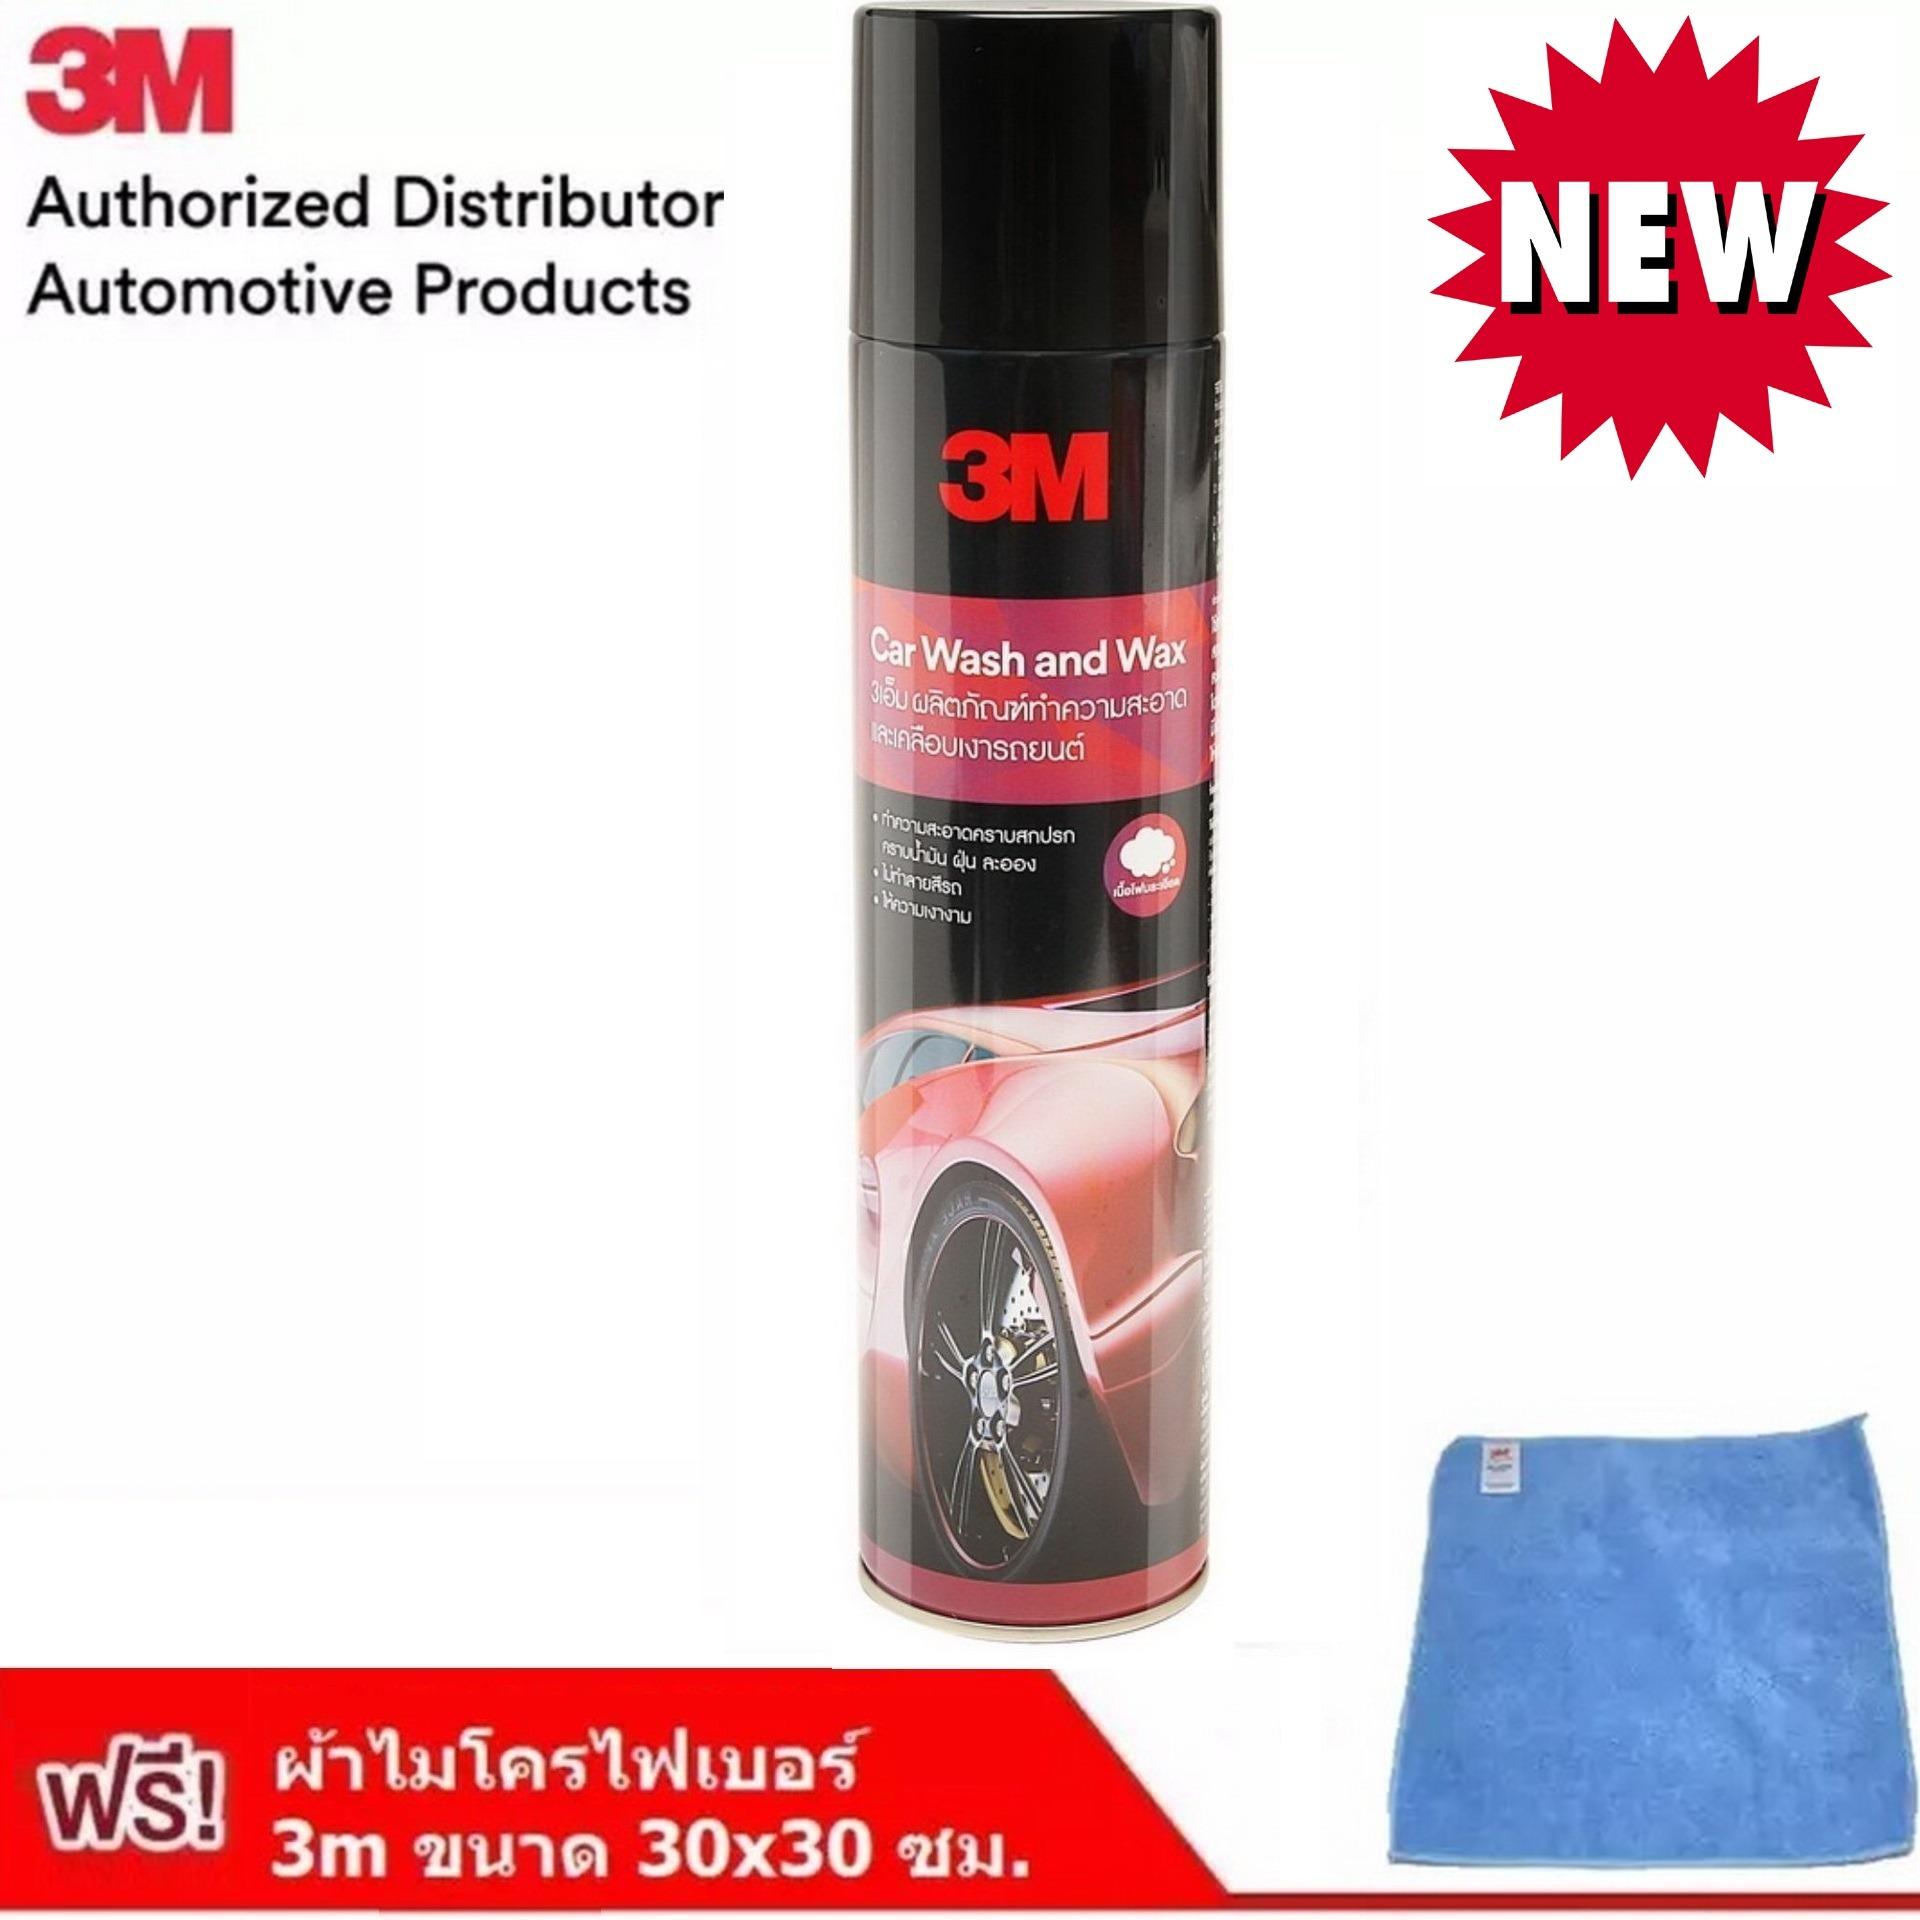 3เอ็ม ผลิตภัณฑ์ทำความสะอาดและเคลือบเงารถยนต์ น้ำยาเคลือบรถ 3M Car Wash and Wax 600 มล. สูตรมูสโฟมอ่อนนุ่ม